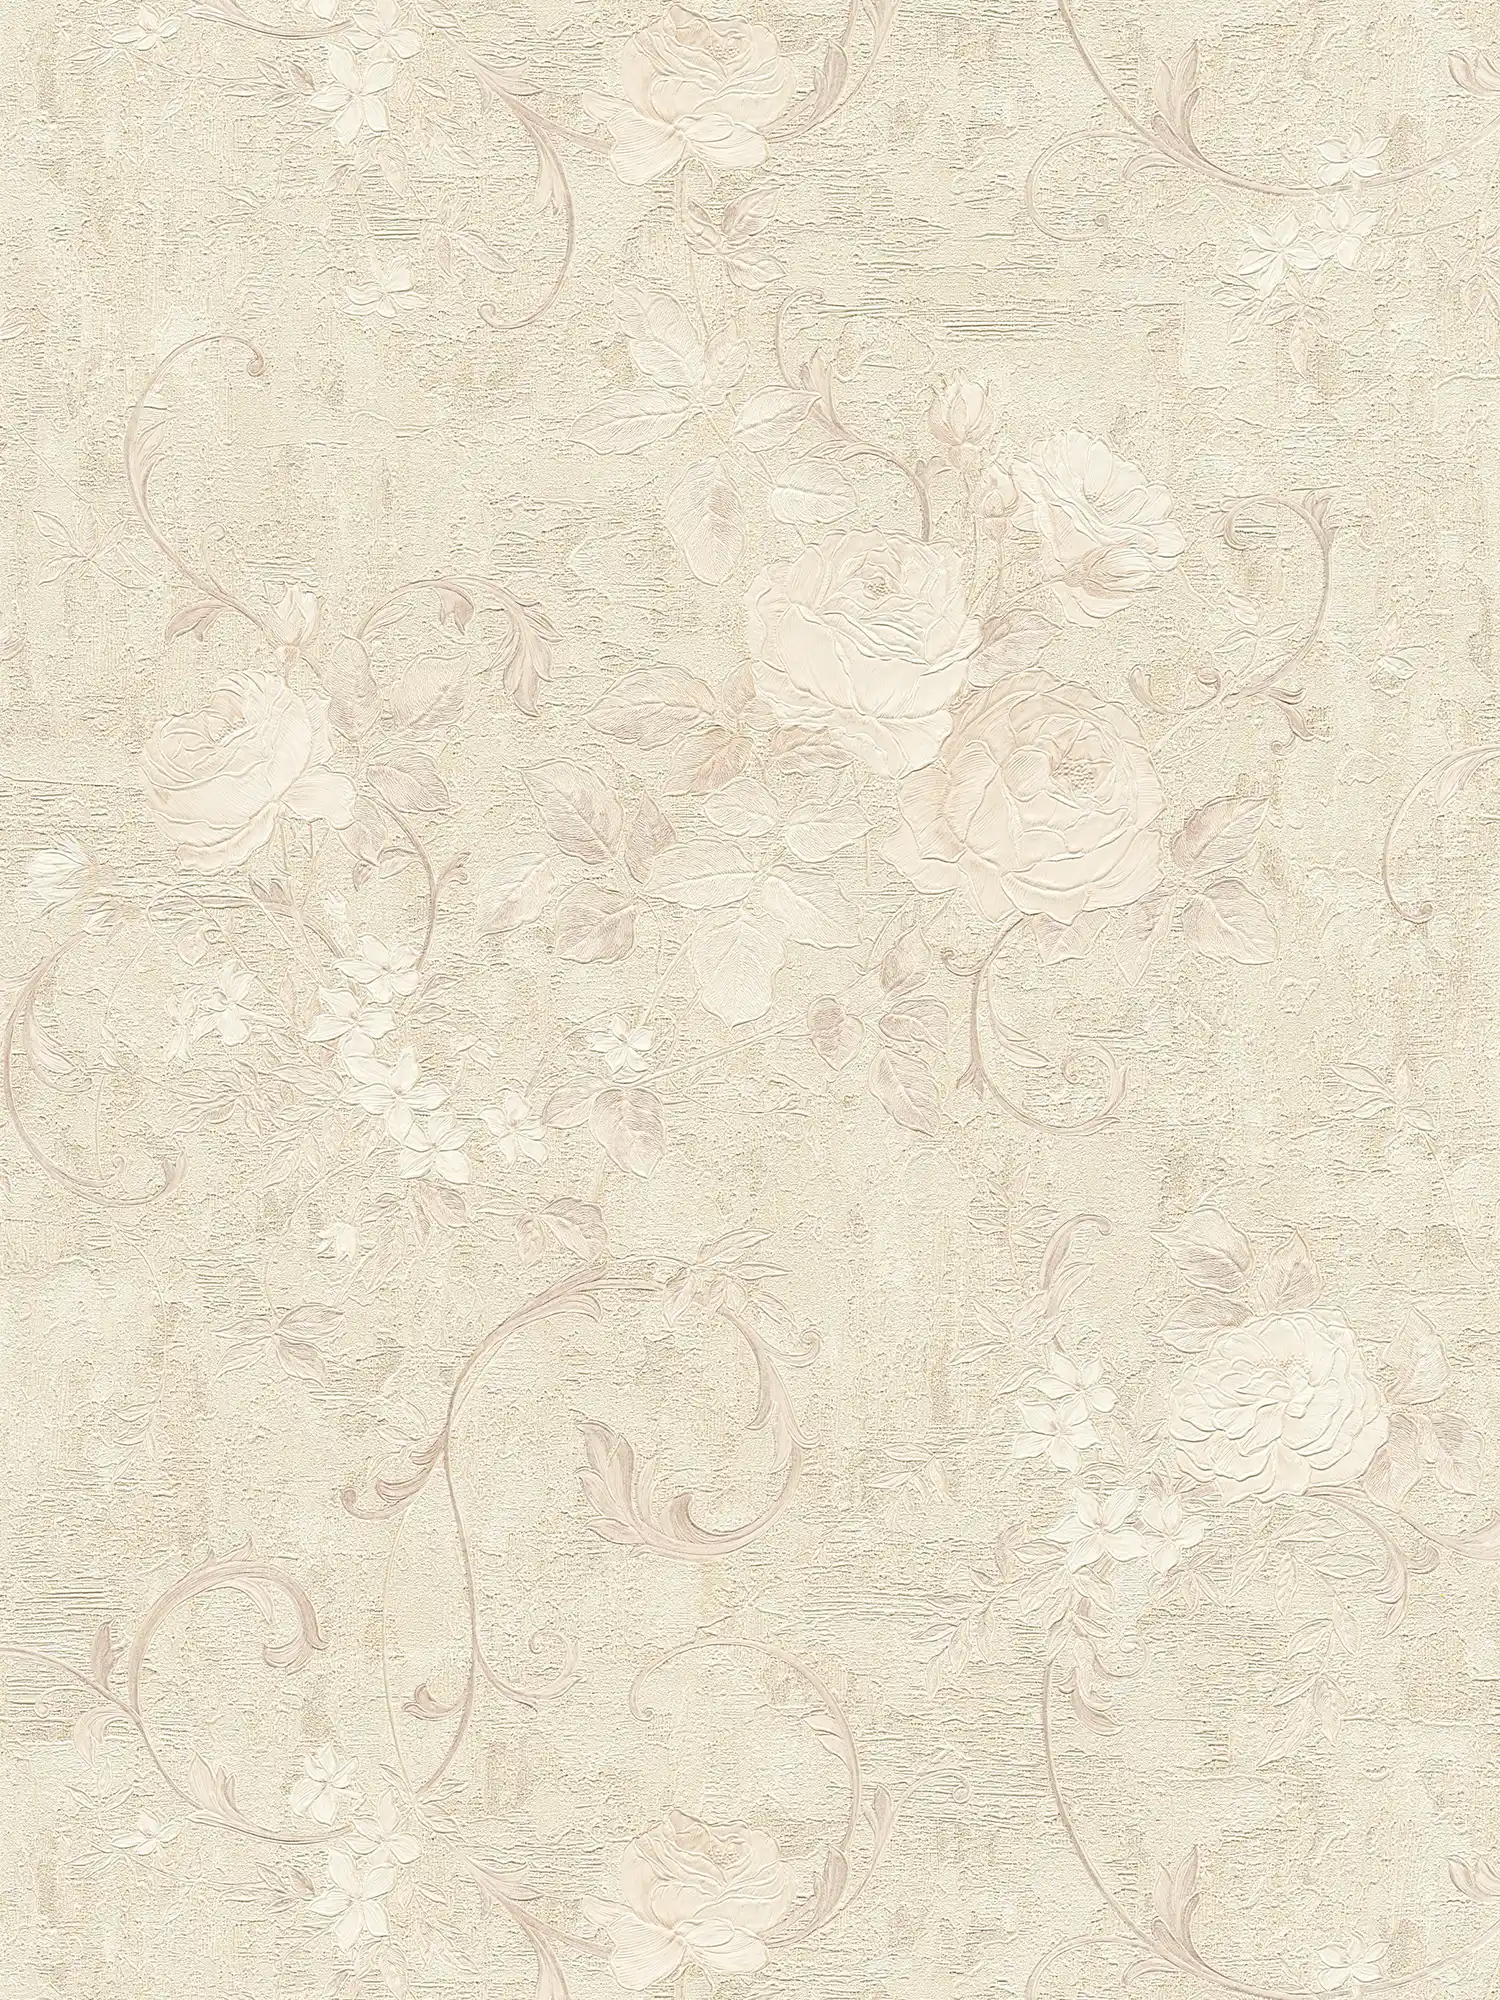         Tapete Rosen-Muster & Blätterranken – Beige, Creme, Grau
    